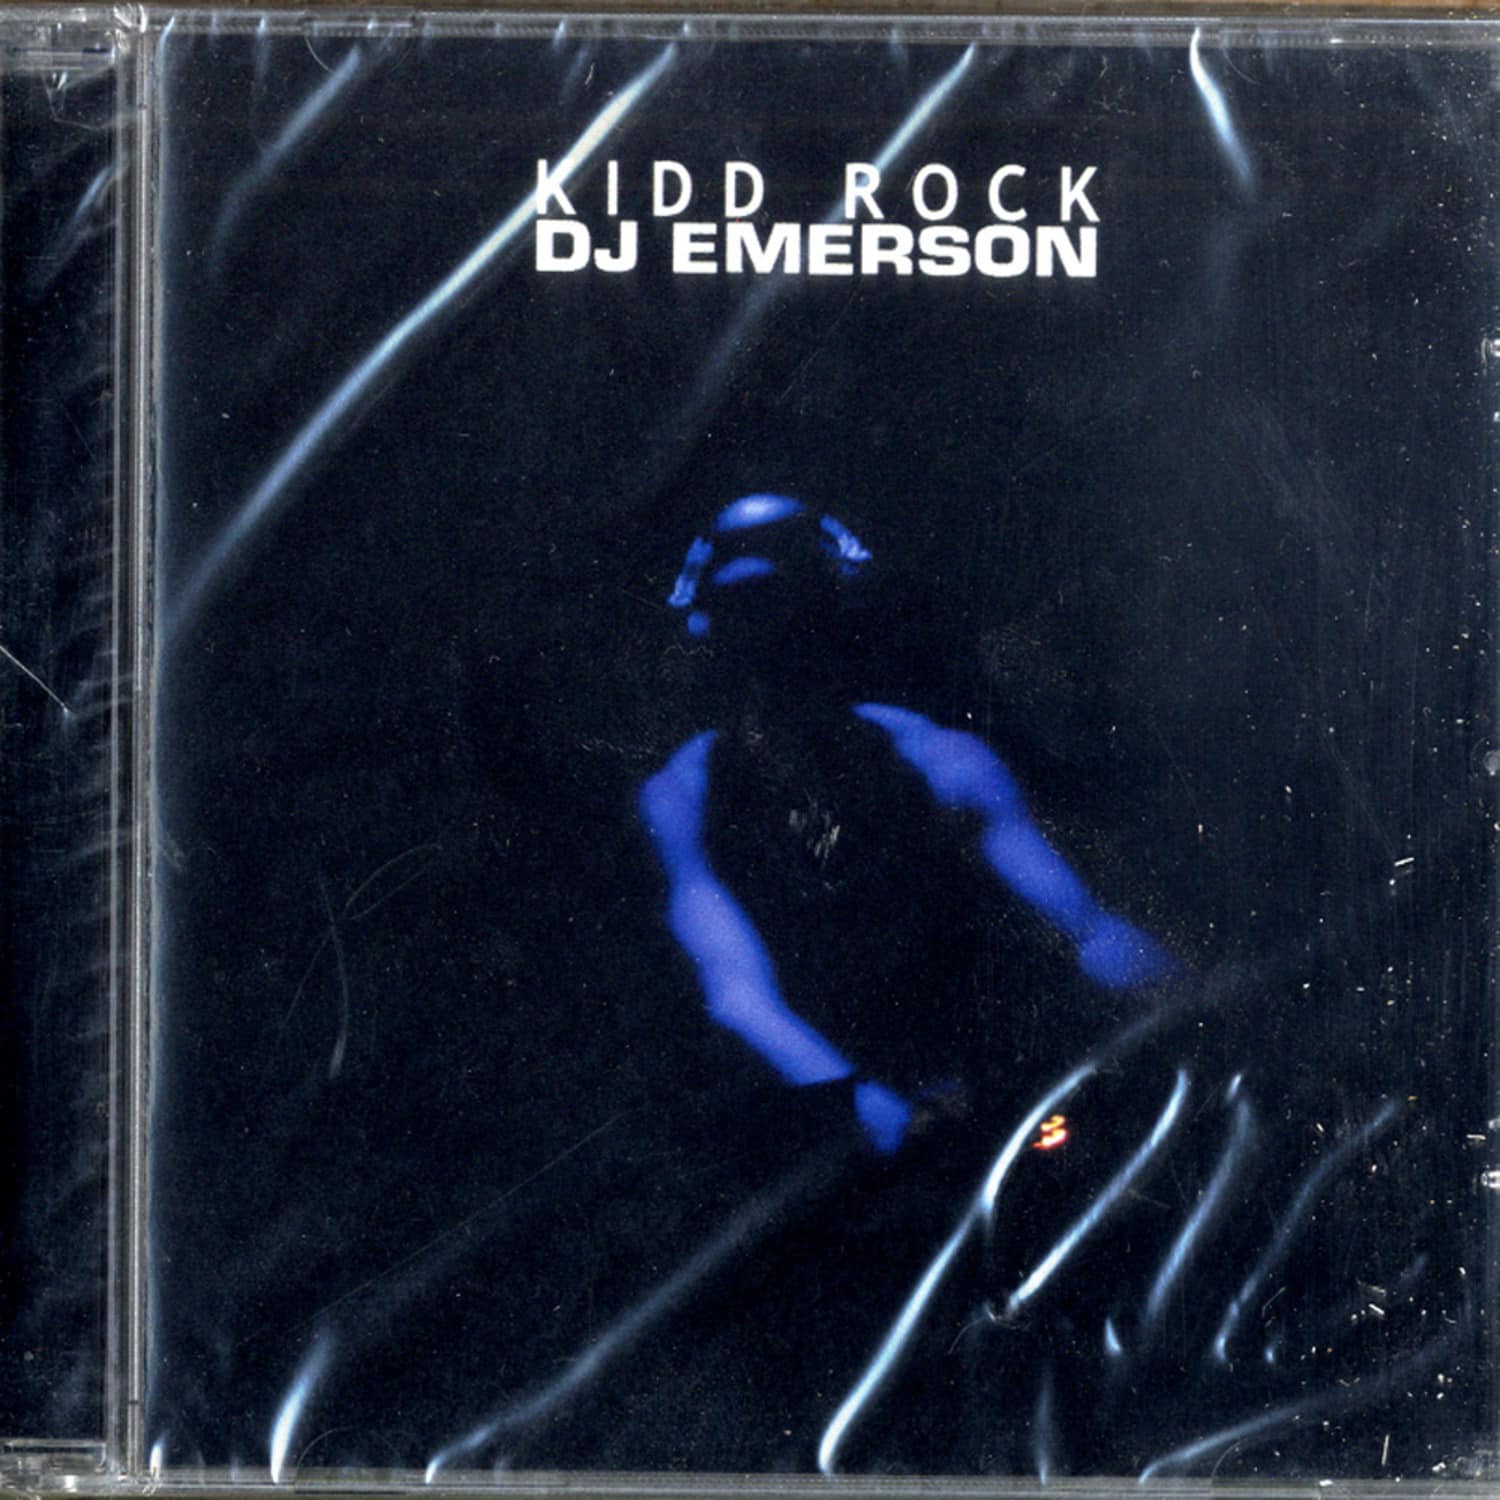 DJ Emerson - KIDD ROCK 